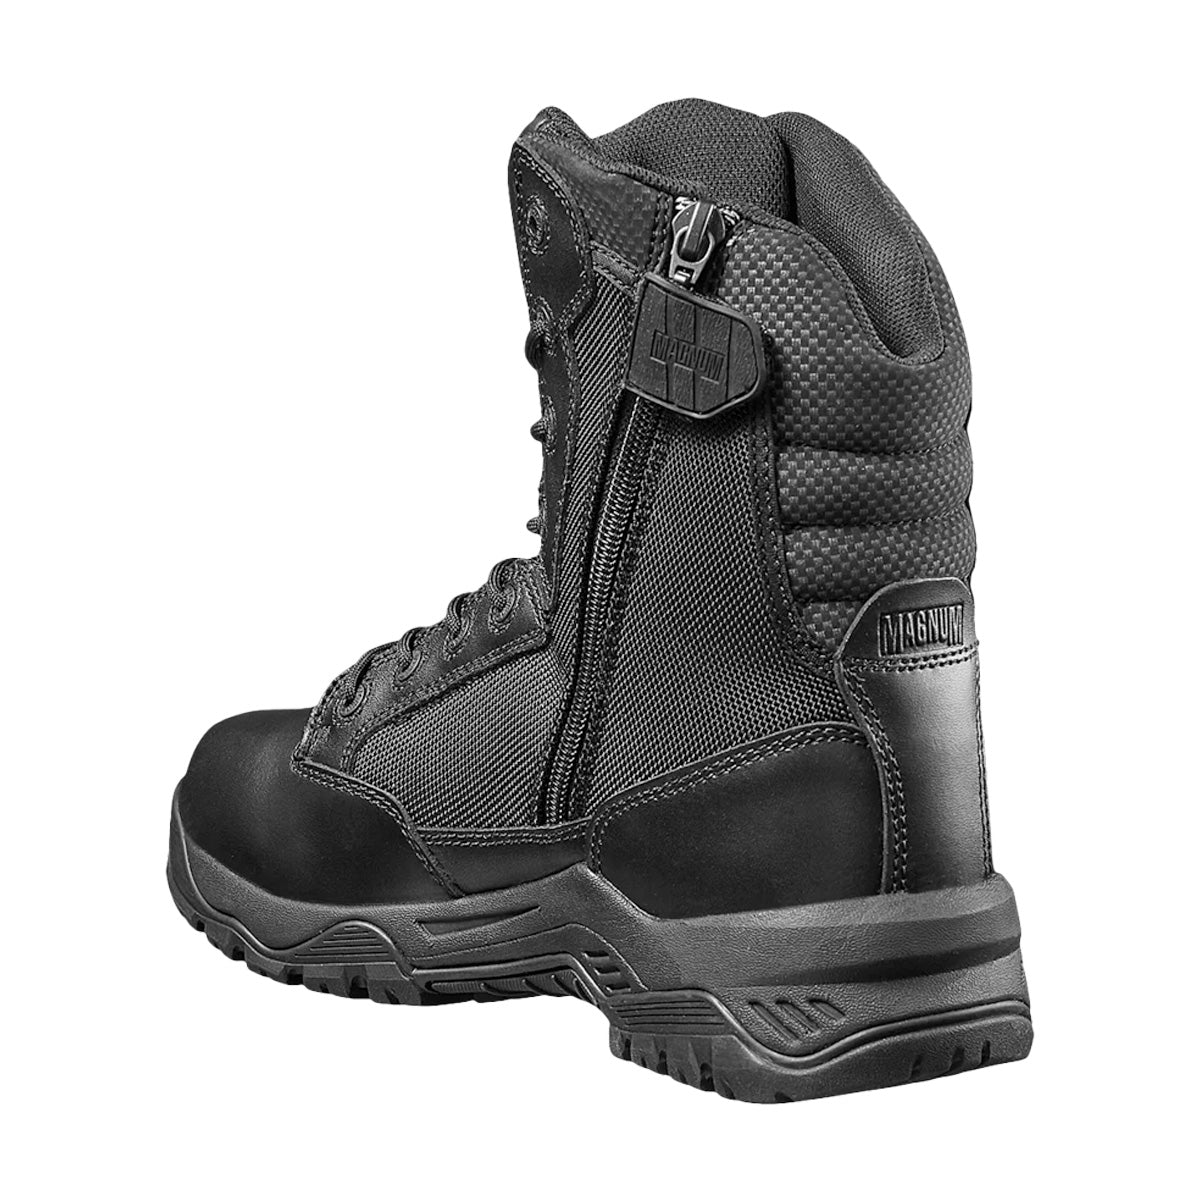 Magnum Strike Force 8.0 Side-Zip Waterproof Boot Black Footwear Magnum Footwear Tactical Gear Supplier Tactical Distributors Australia